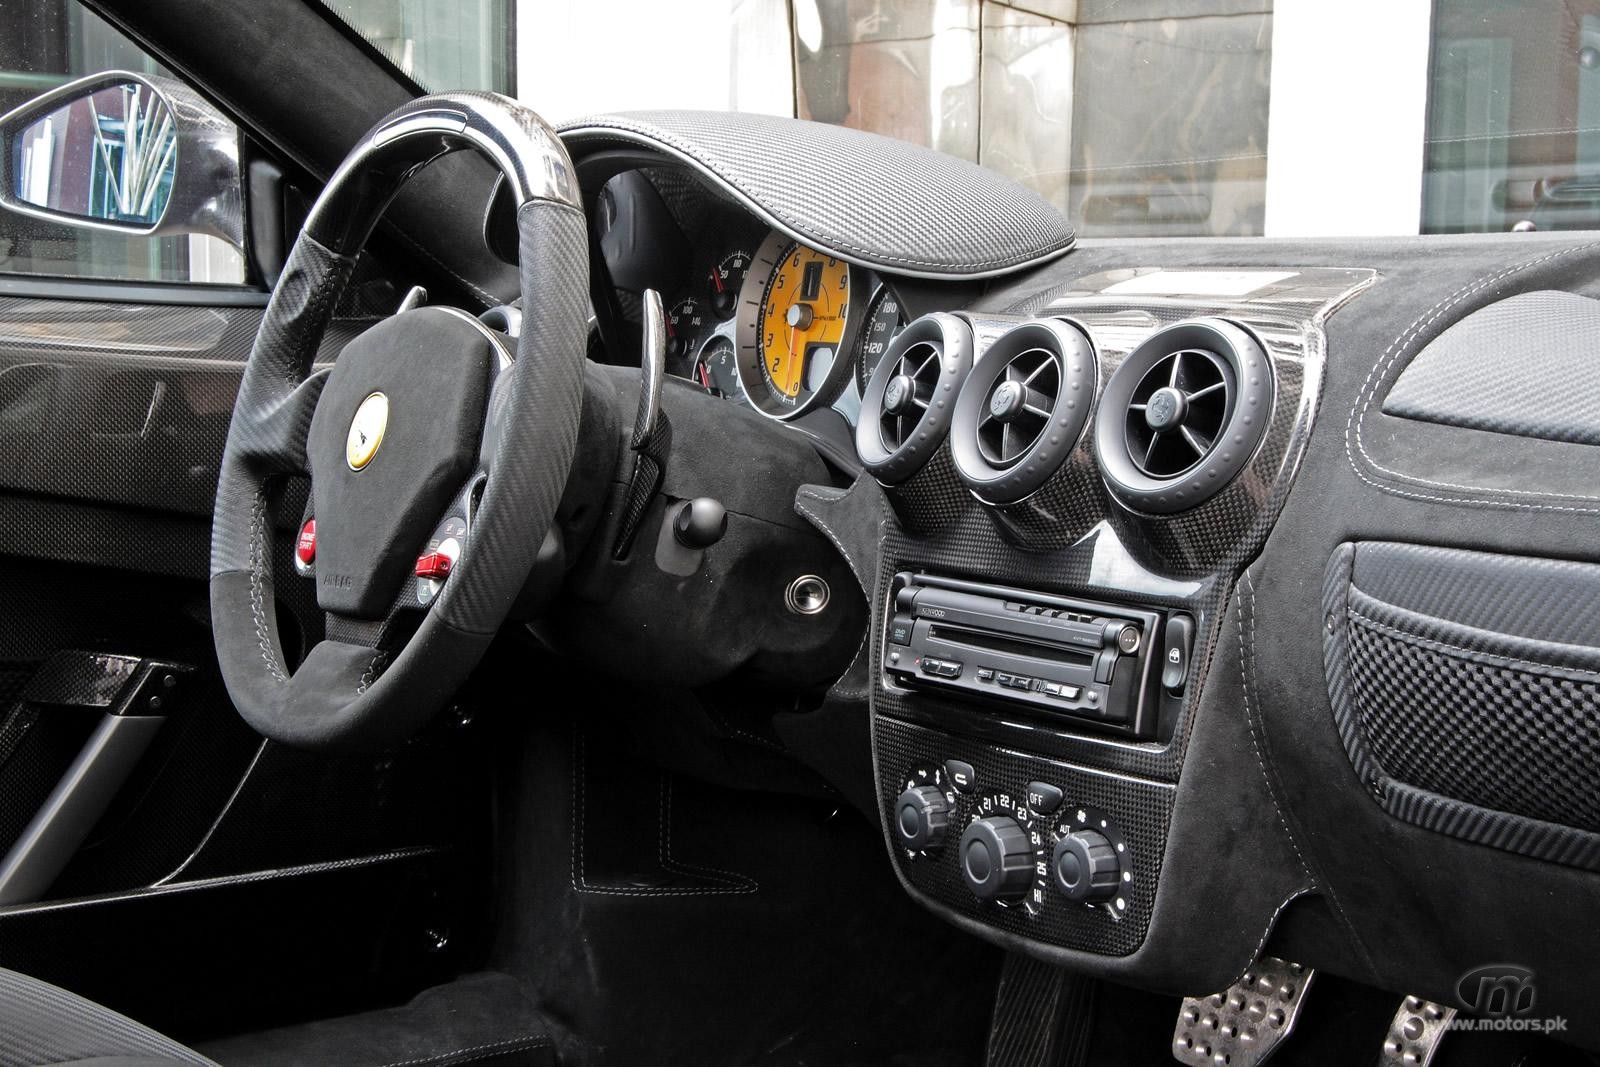 Ferrari F430 Scuderia interior view